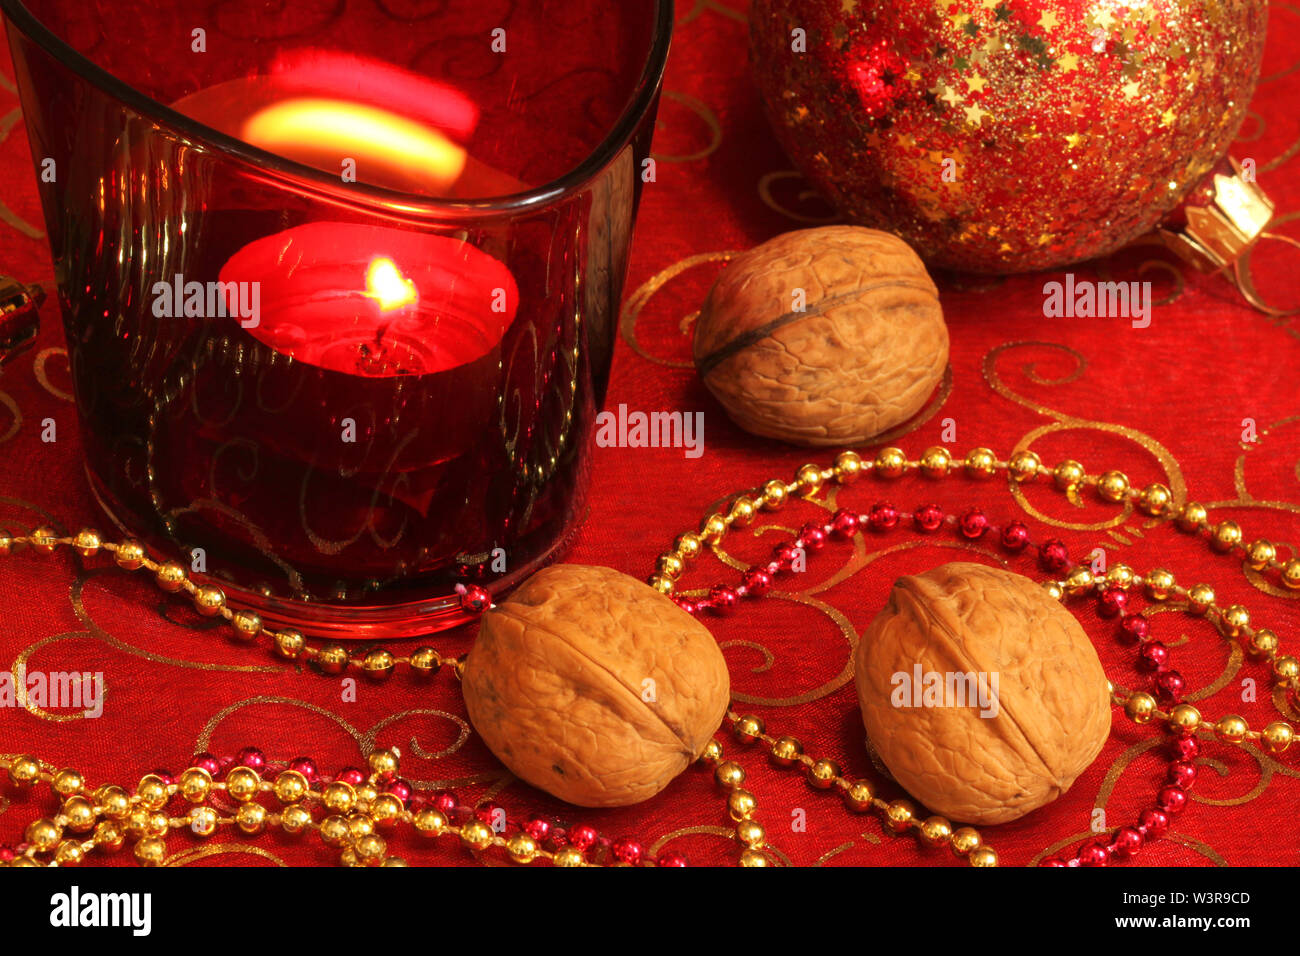 Natale Decorazioni per la tavola con le catene, candela e noci Foto Stock